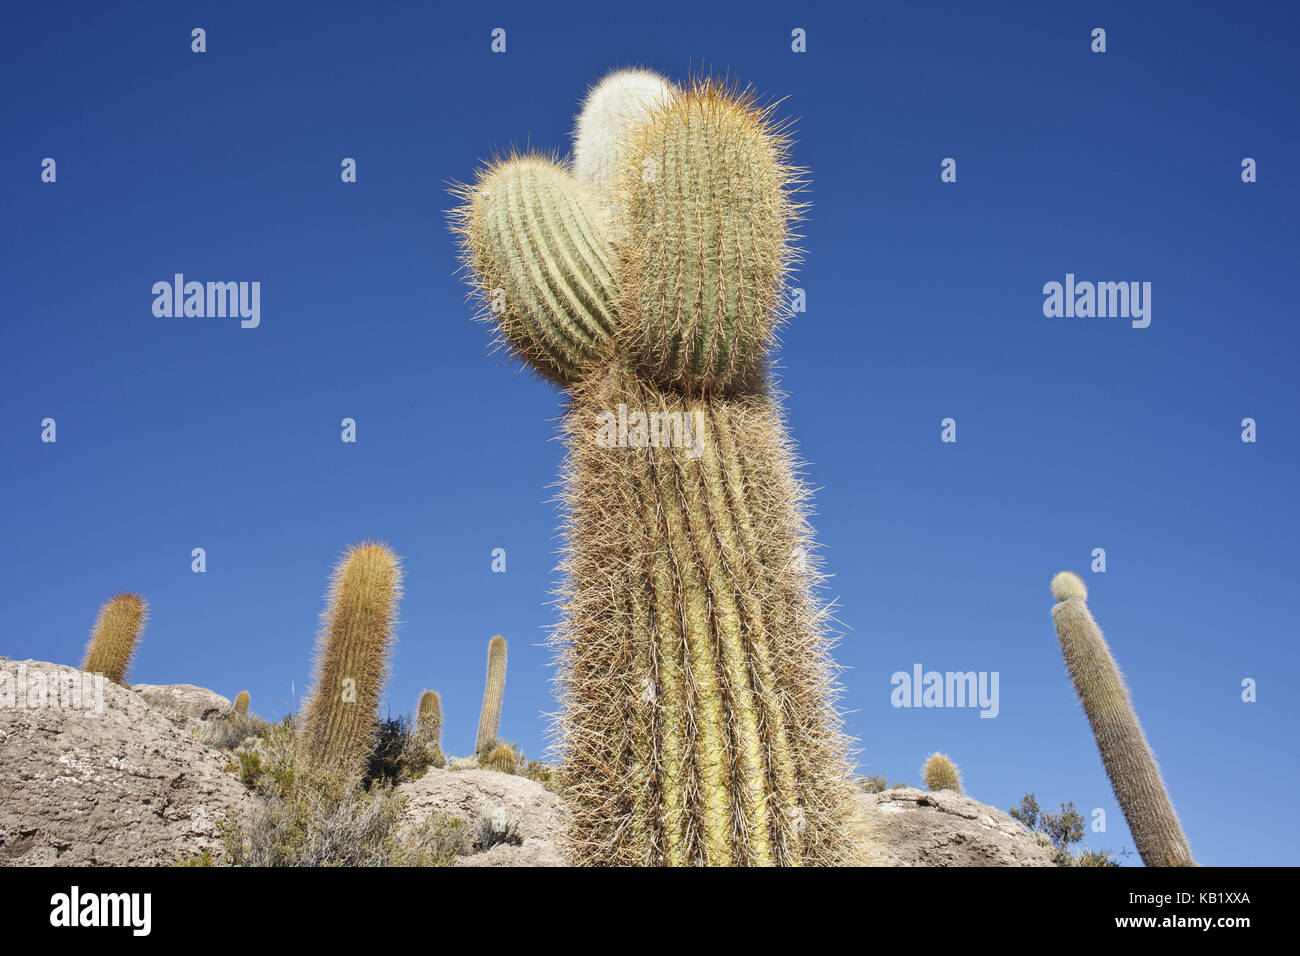 Bolivia, Salar de Uyuni, Isla Inca Huasi, cacti, Stock Photo